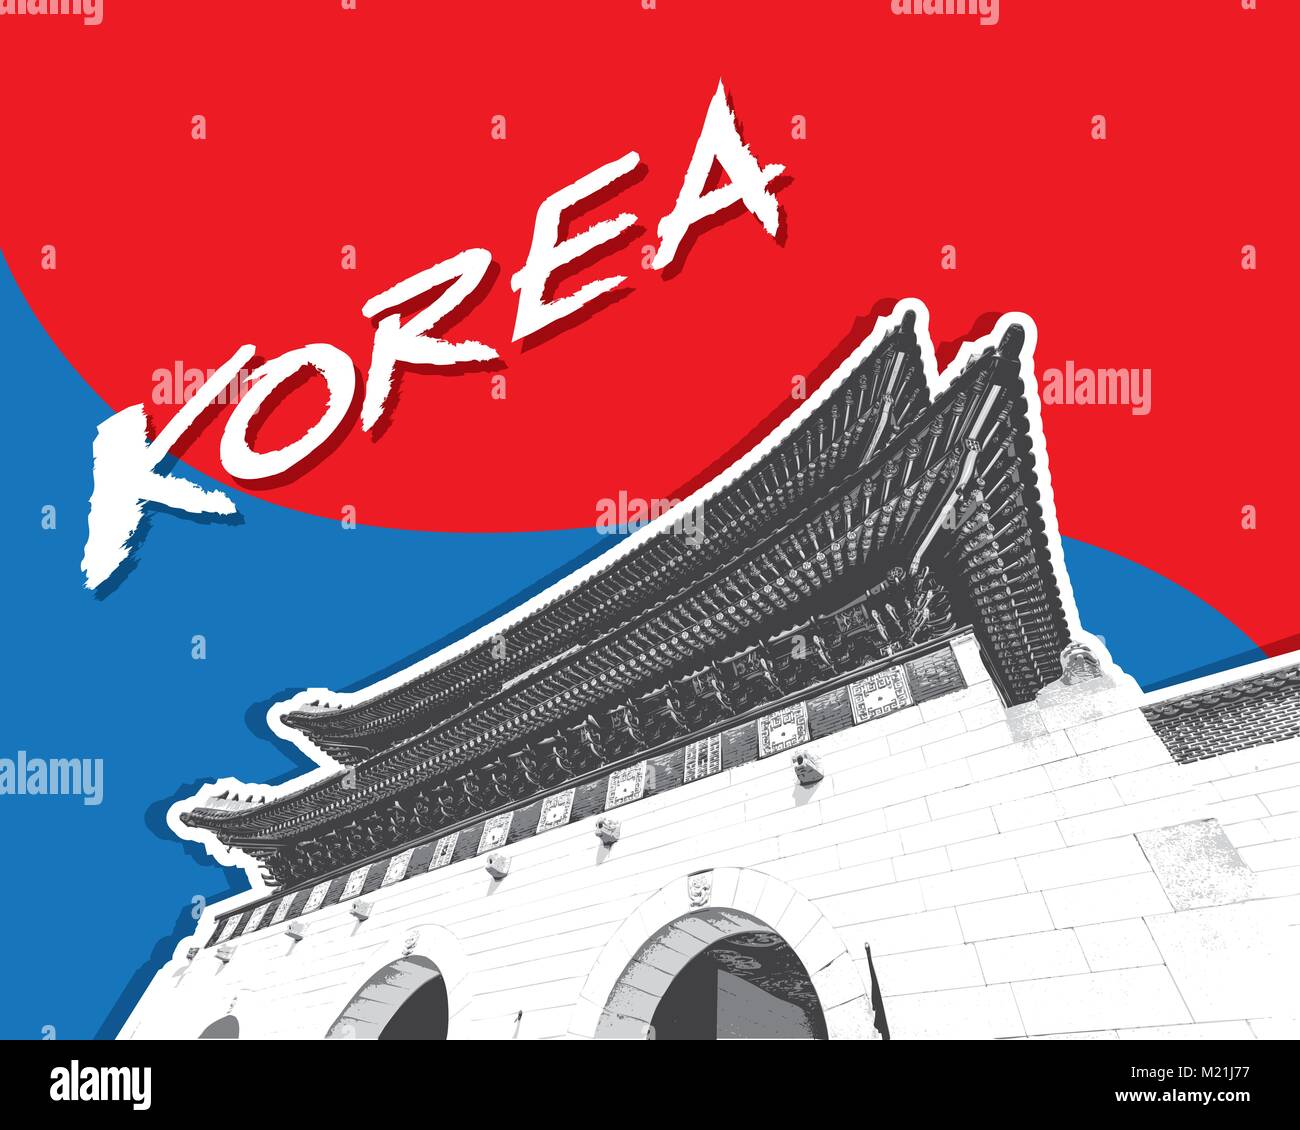 Gyeongbokgung Palace à Séoul, Corée du Sud, vector Illustration de Vecteur